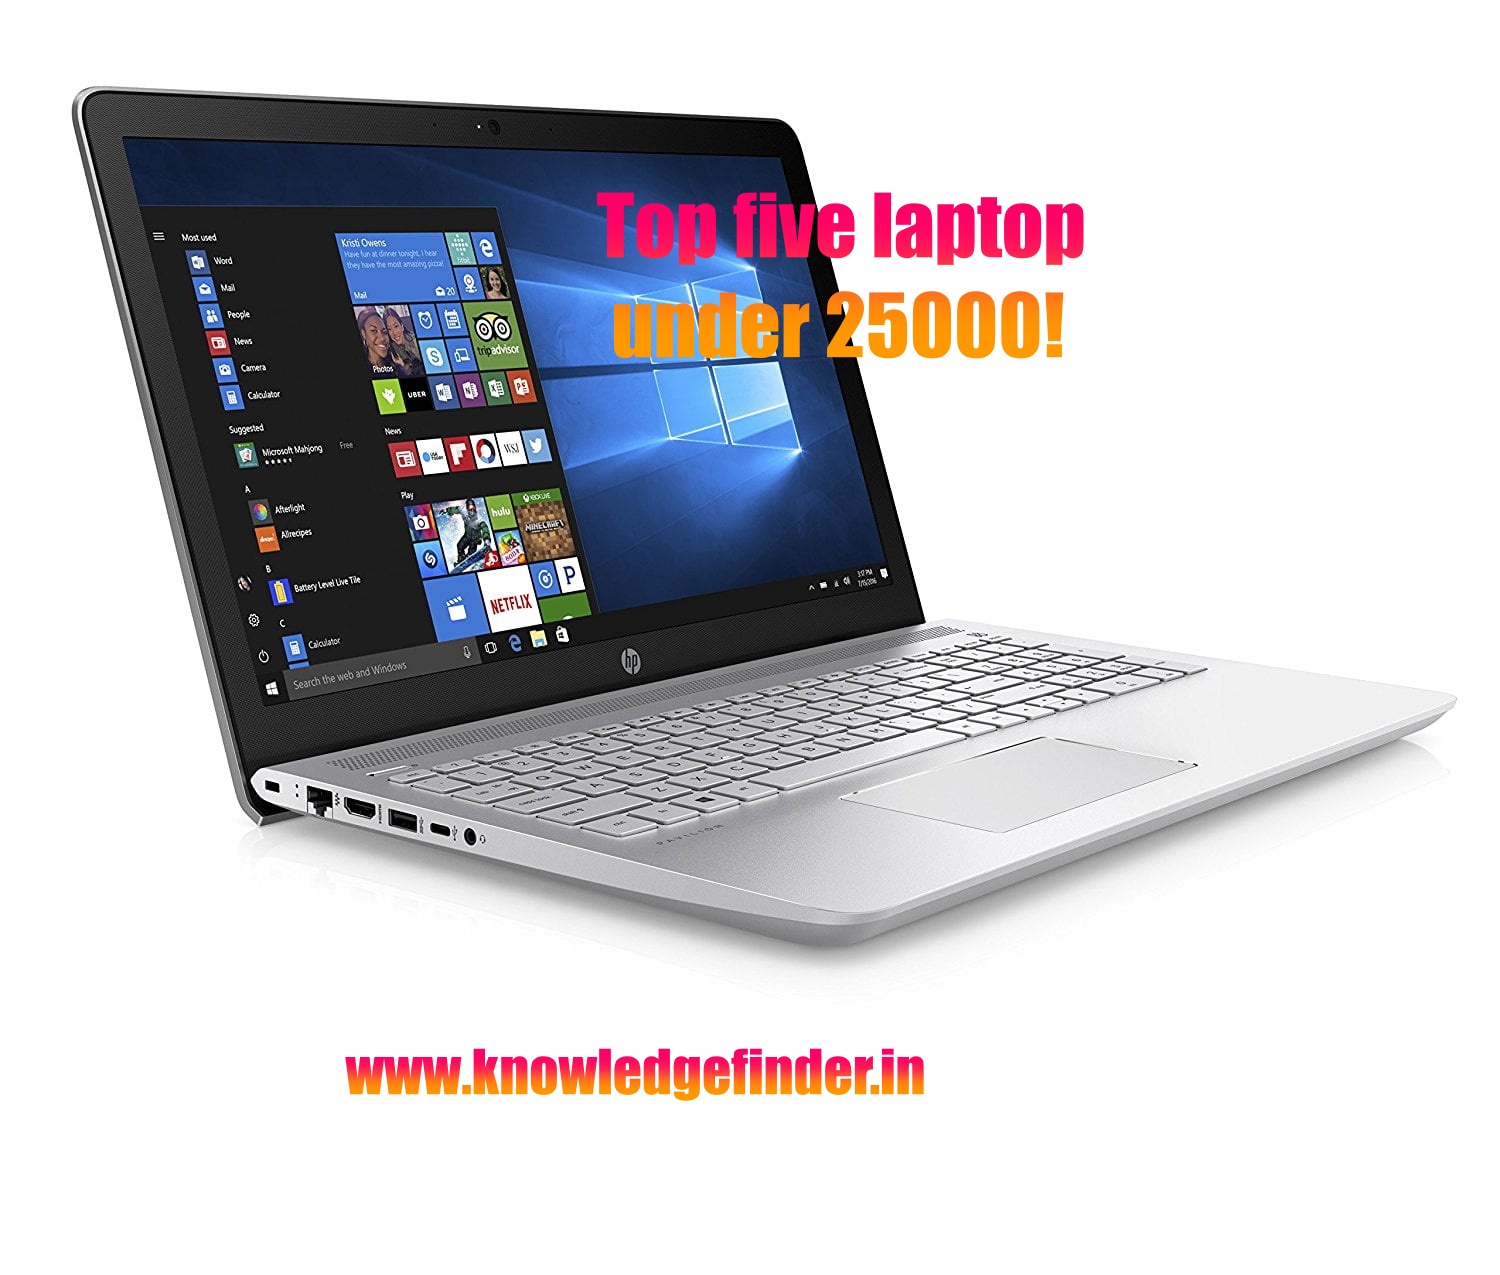 Top Five laptop under 25000 rupee!!